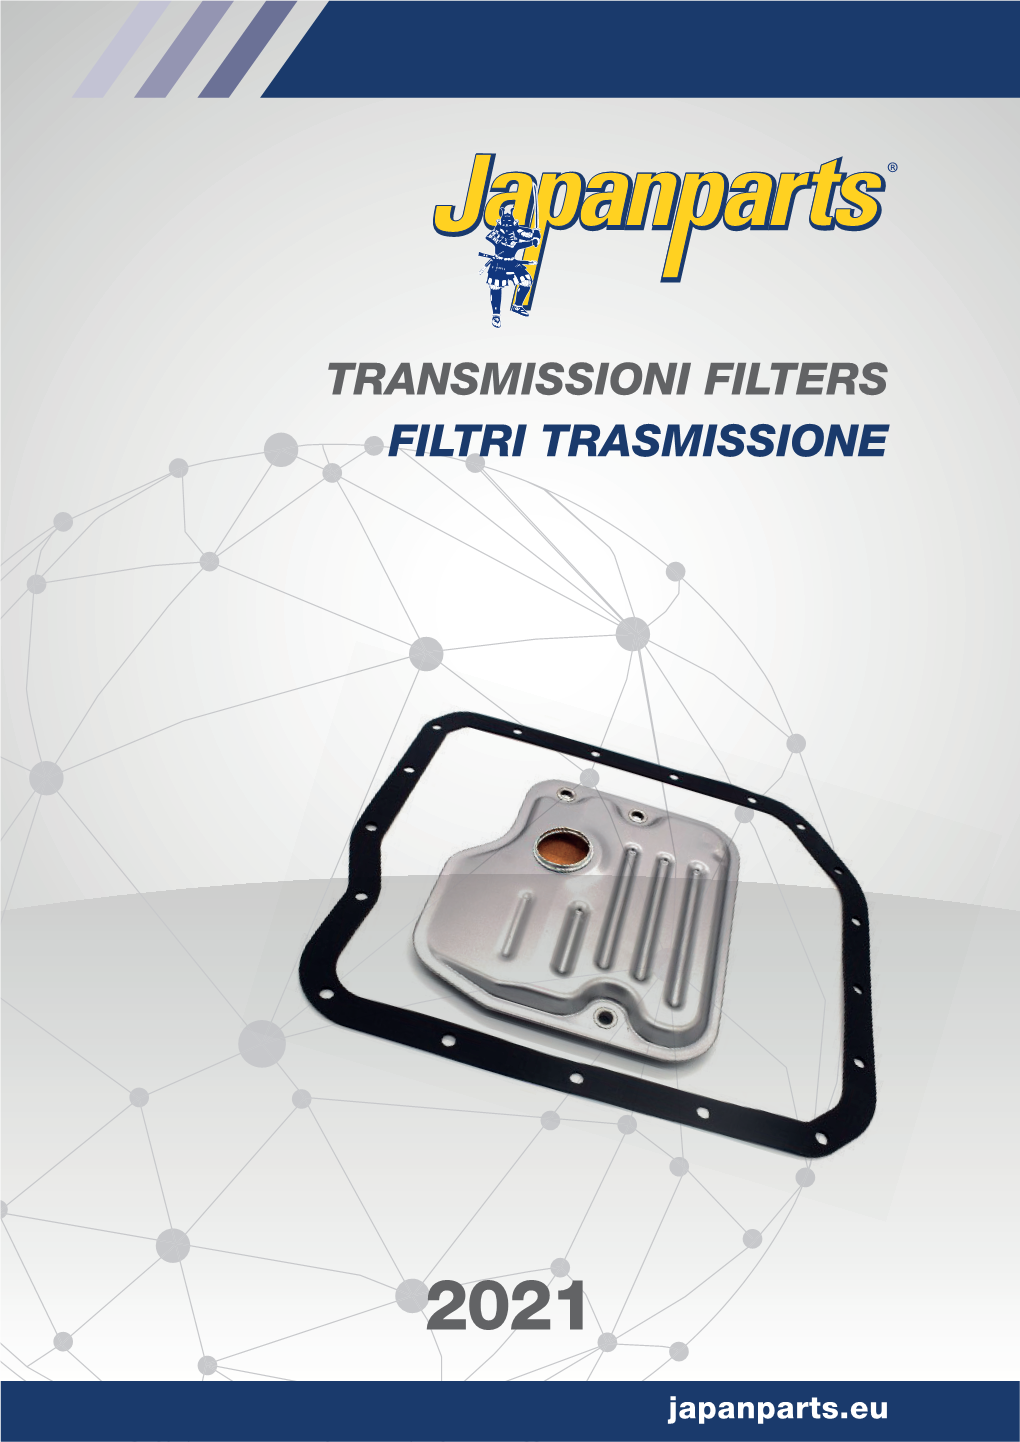 Transmissioni Filters Filtri Trasmissione